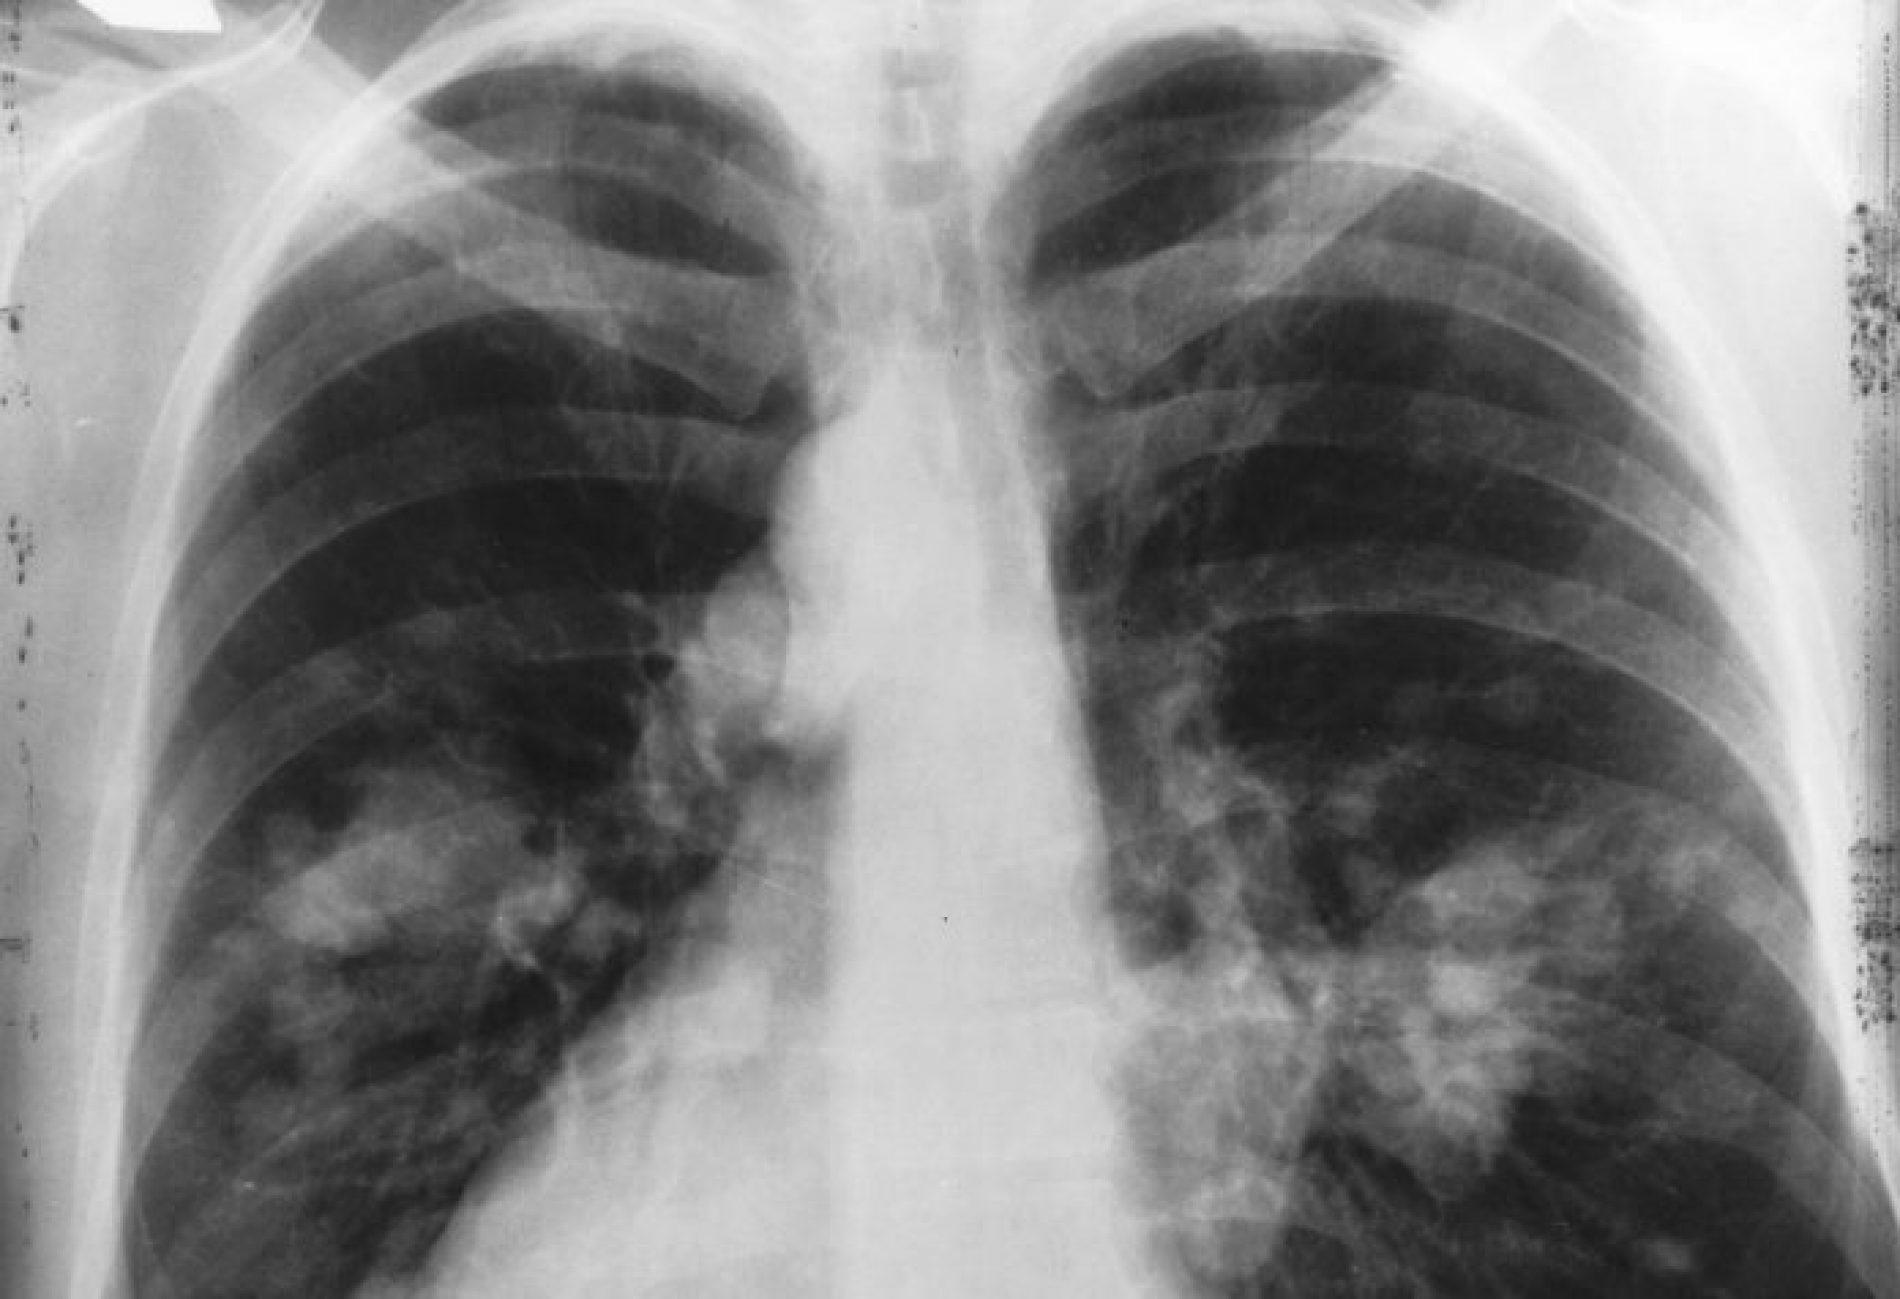 SAÚDE: Novo exame identifica câncer de pulmão com maior precisão